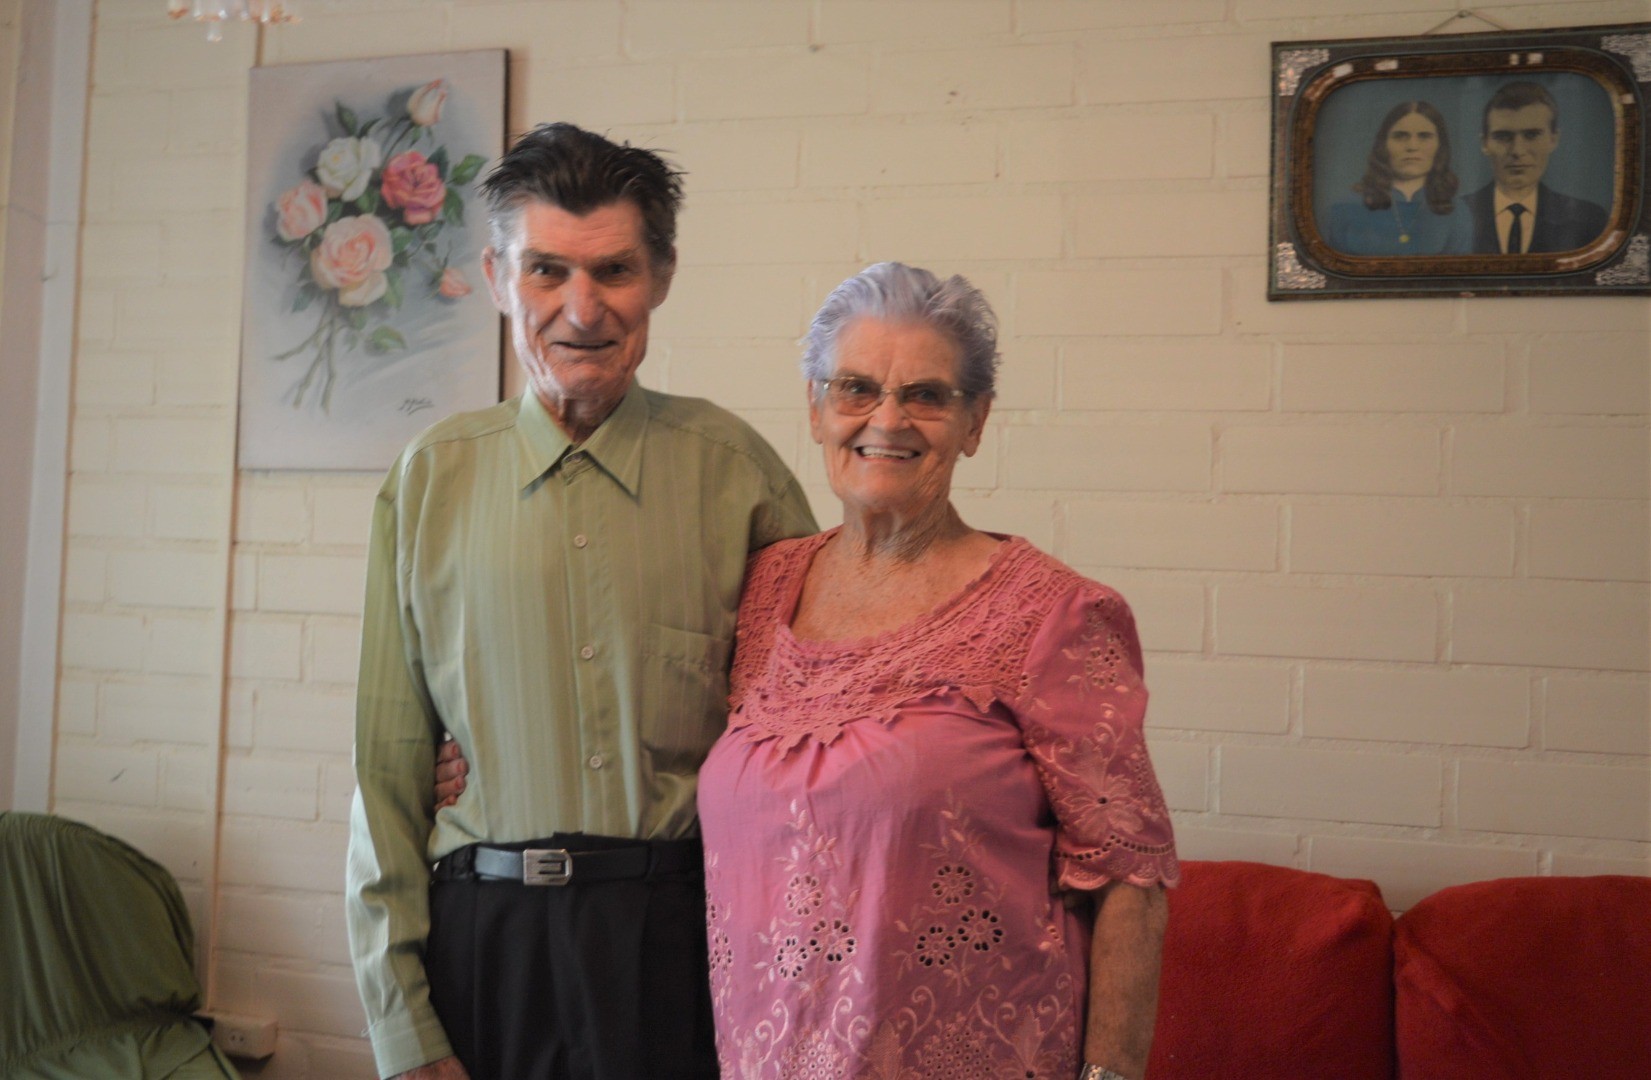 Bodas de Fabulita: Arlindo e Maria Baumgarten comemoram 64 anos de matrimônio